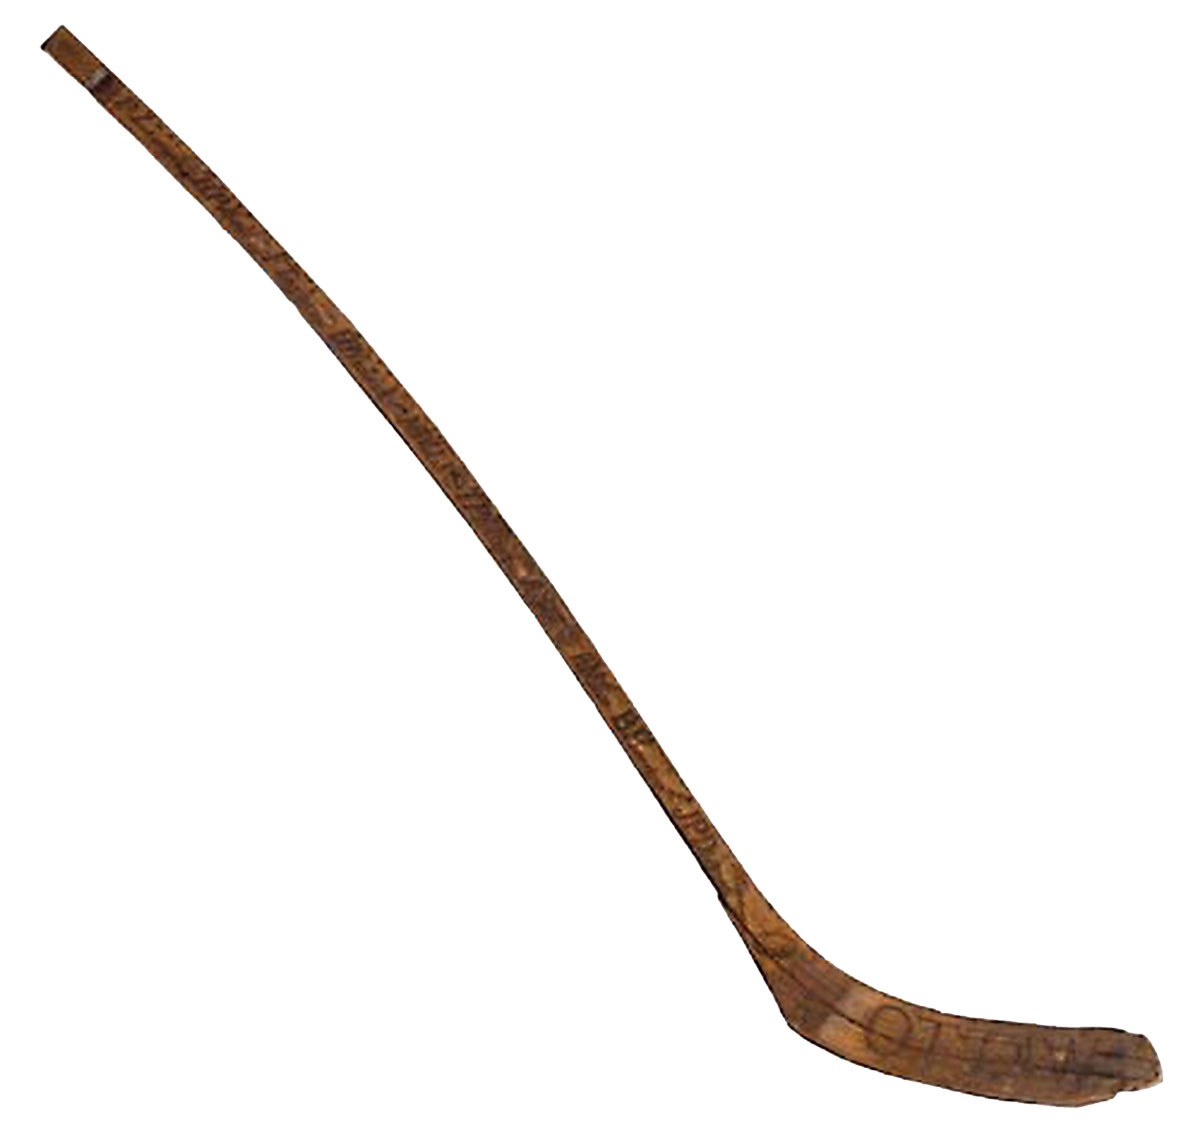 Bâton de hockey utilisé par Cyclone Taylor lors de sa première saison avec les Sénateurs d’Ottawa en 1907-1908 (Photo avec l’aimable autorisation de Matthew Manor et du Temple de la renommée du hockey)